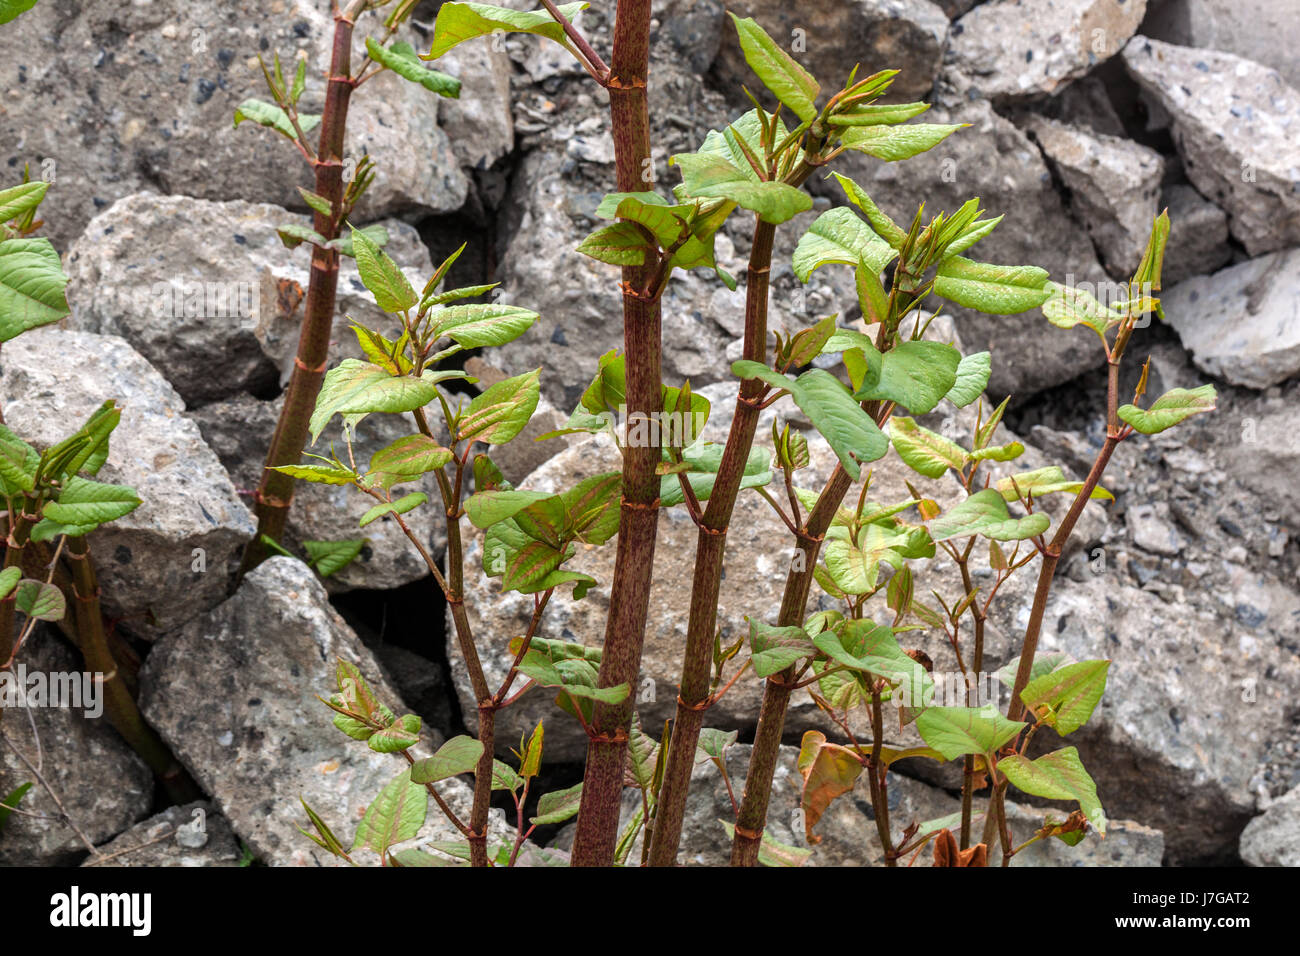 Japanisches Knokenkraut wächst auf Rums, Triebe des Wachstums Reynoutria japonica Fallopia japonica Asiatische Knokenkrautstämme wachsen auf einem Betonkippgrund Müll Stockfoto